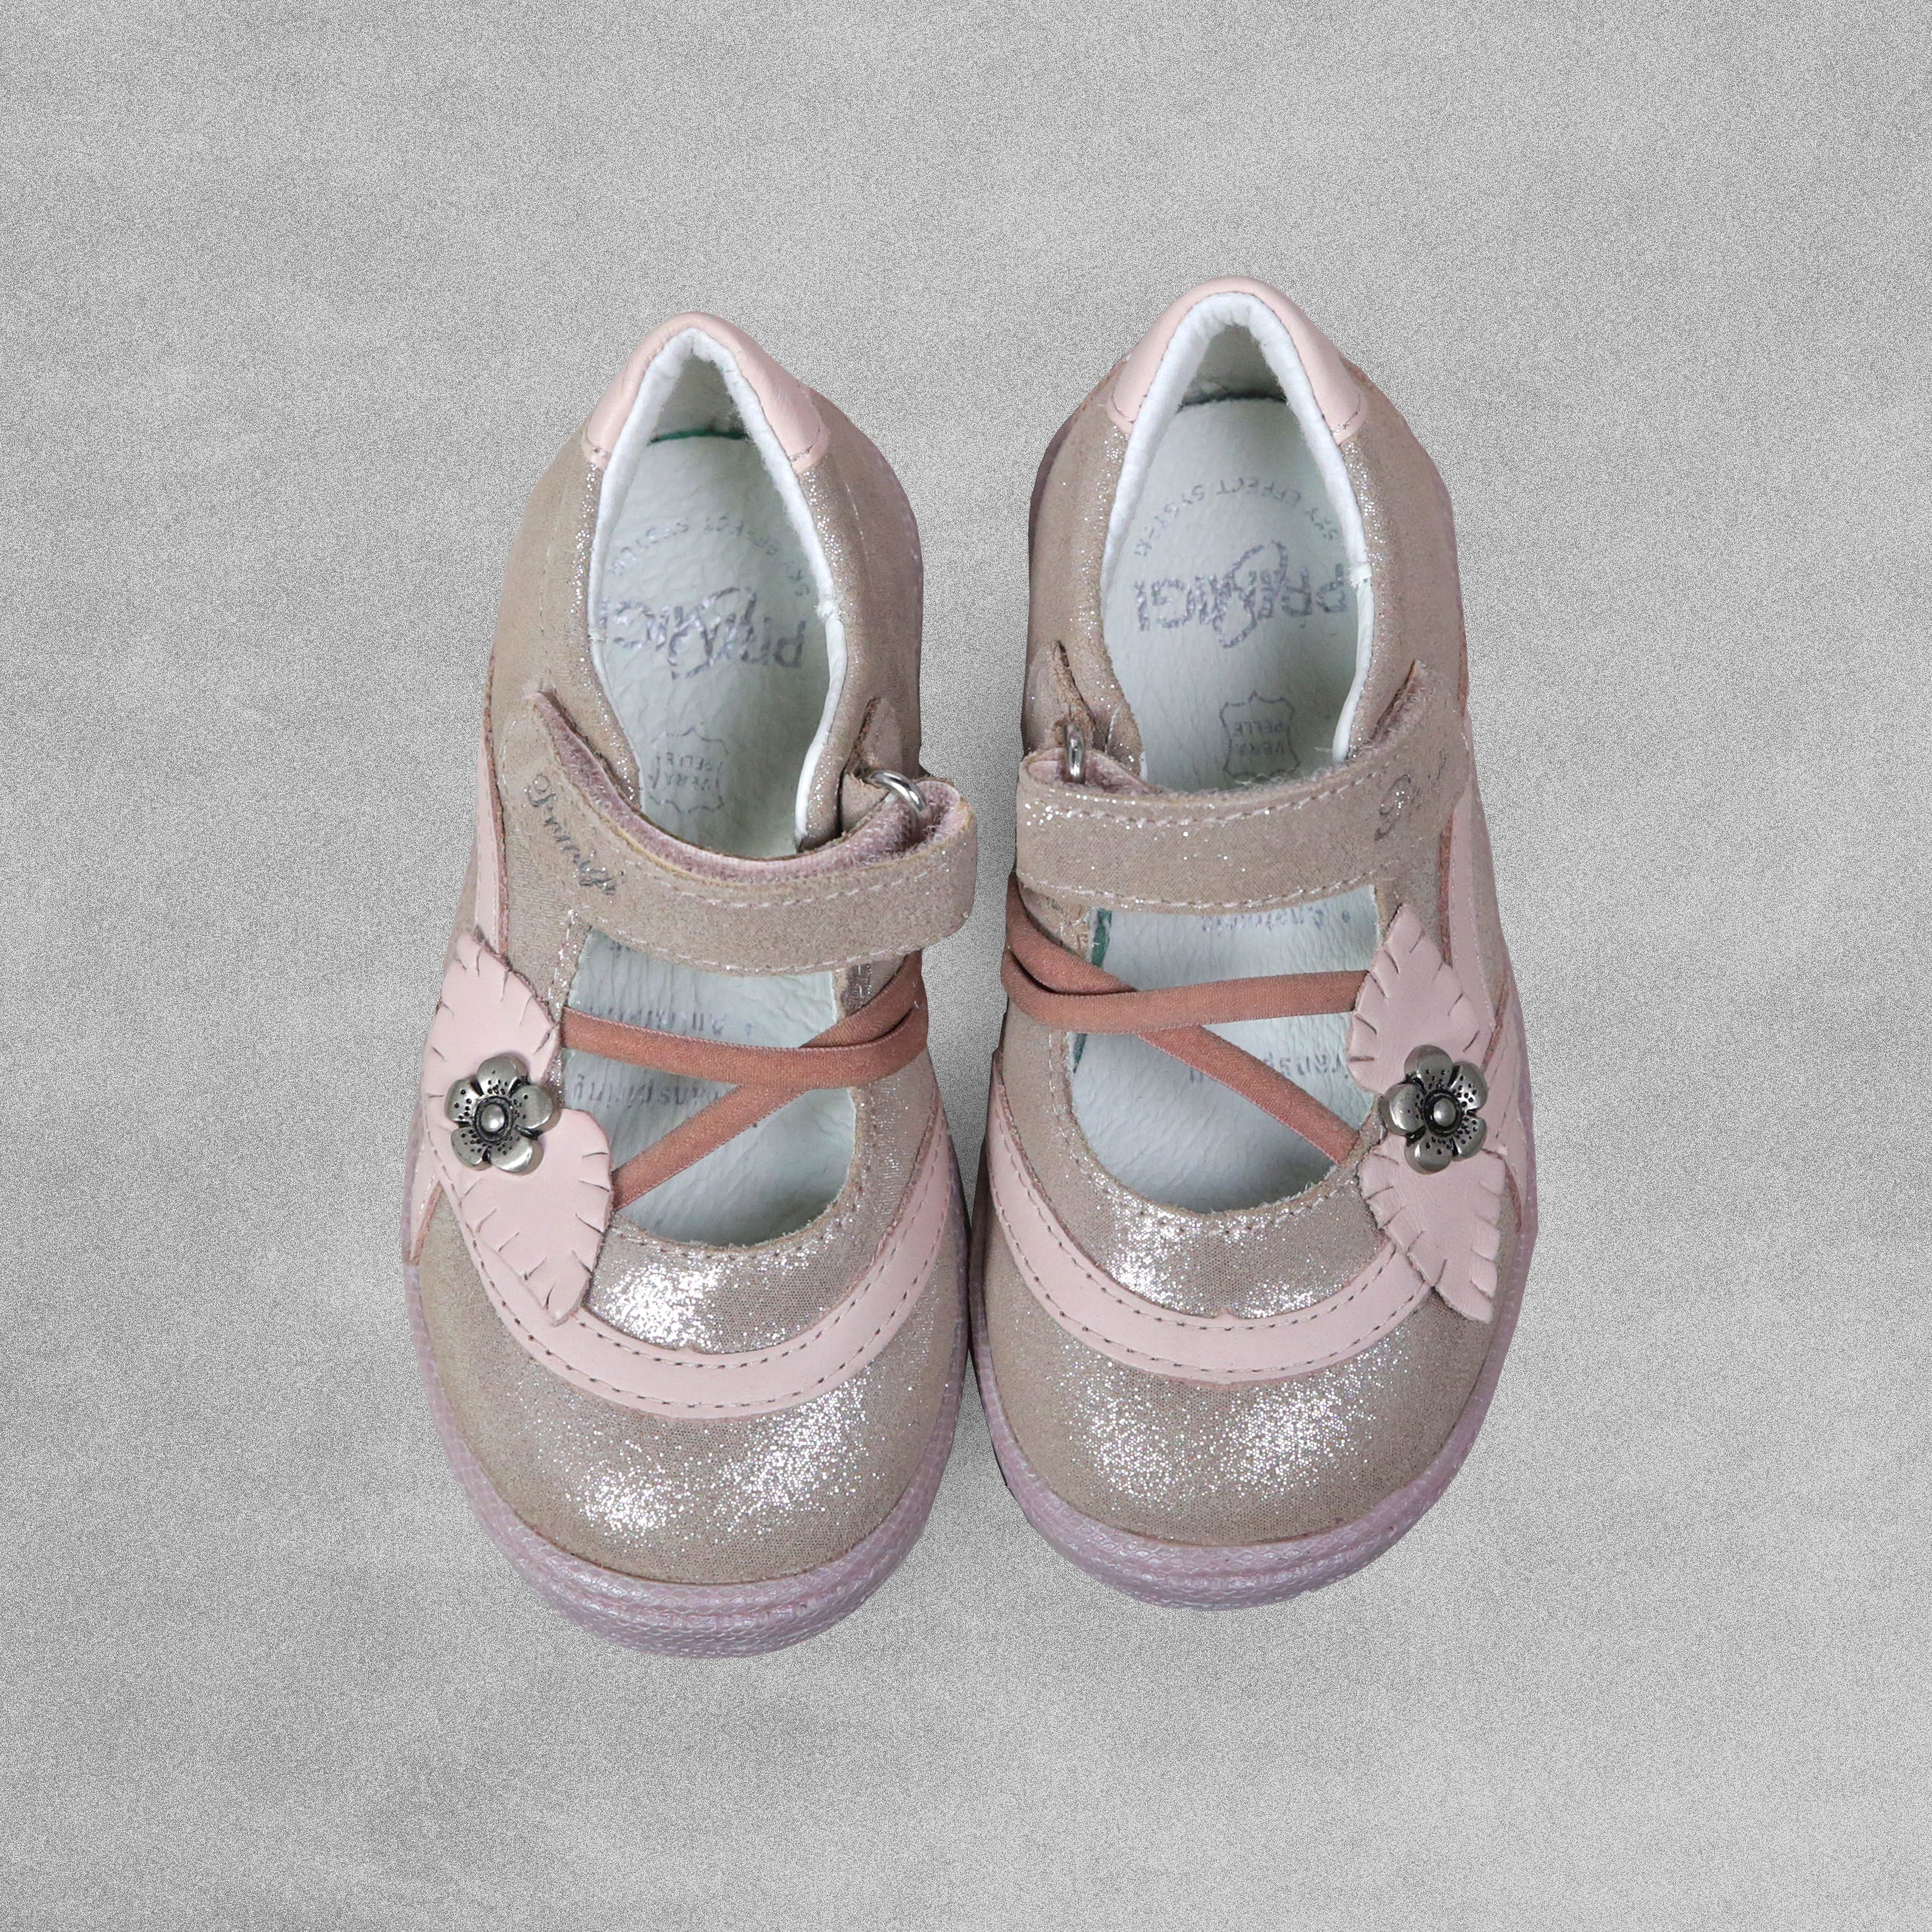 'Primigi' Girls Pink Mary Jane Shoes - UK Child Size 6 / EU 23